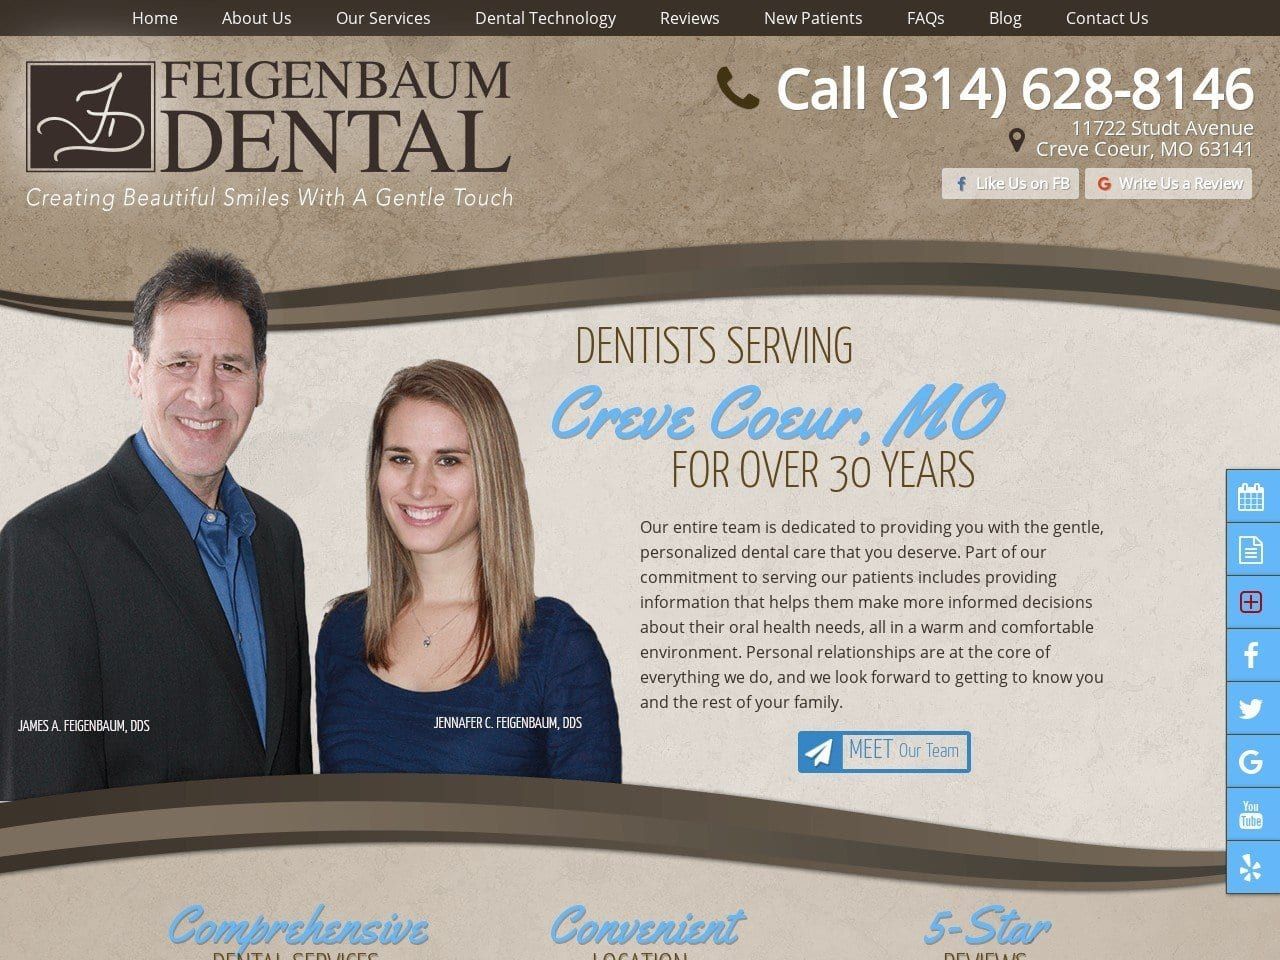 Dr. James A. Feigenbaum DDS Website Screenshot from feigenbaumdental.com